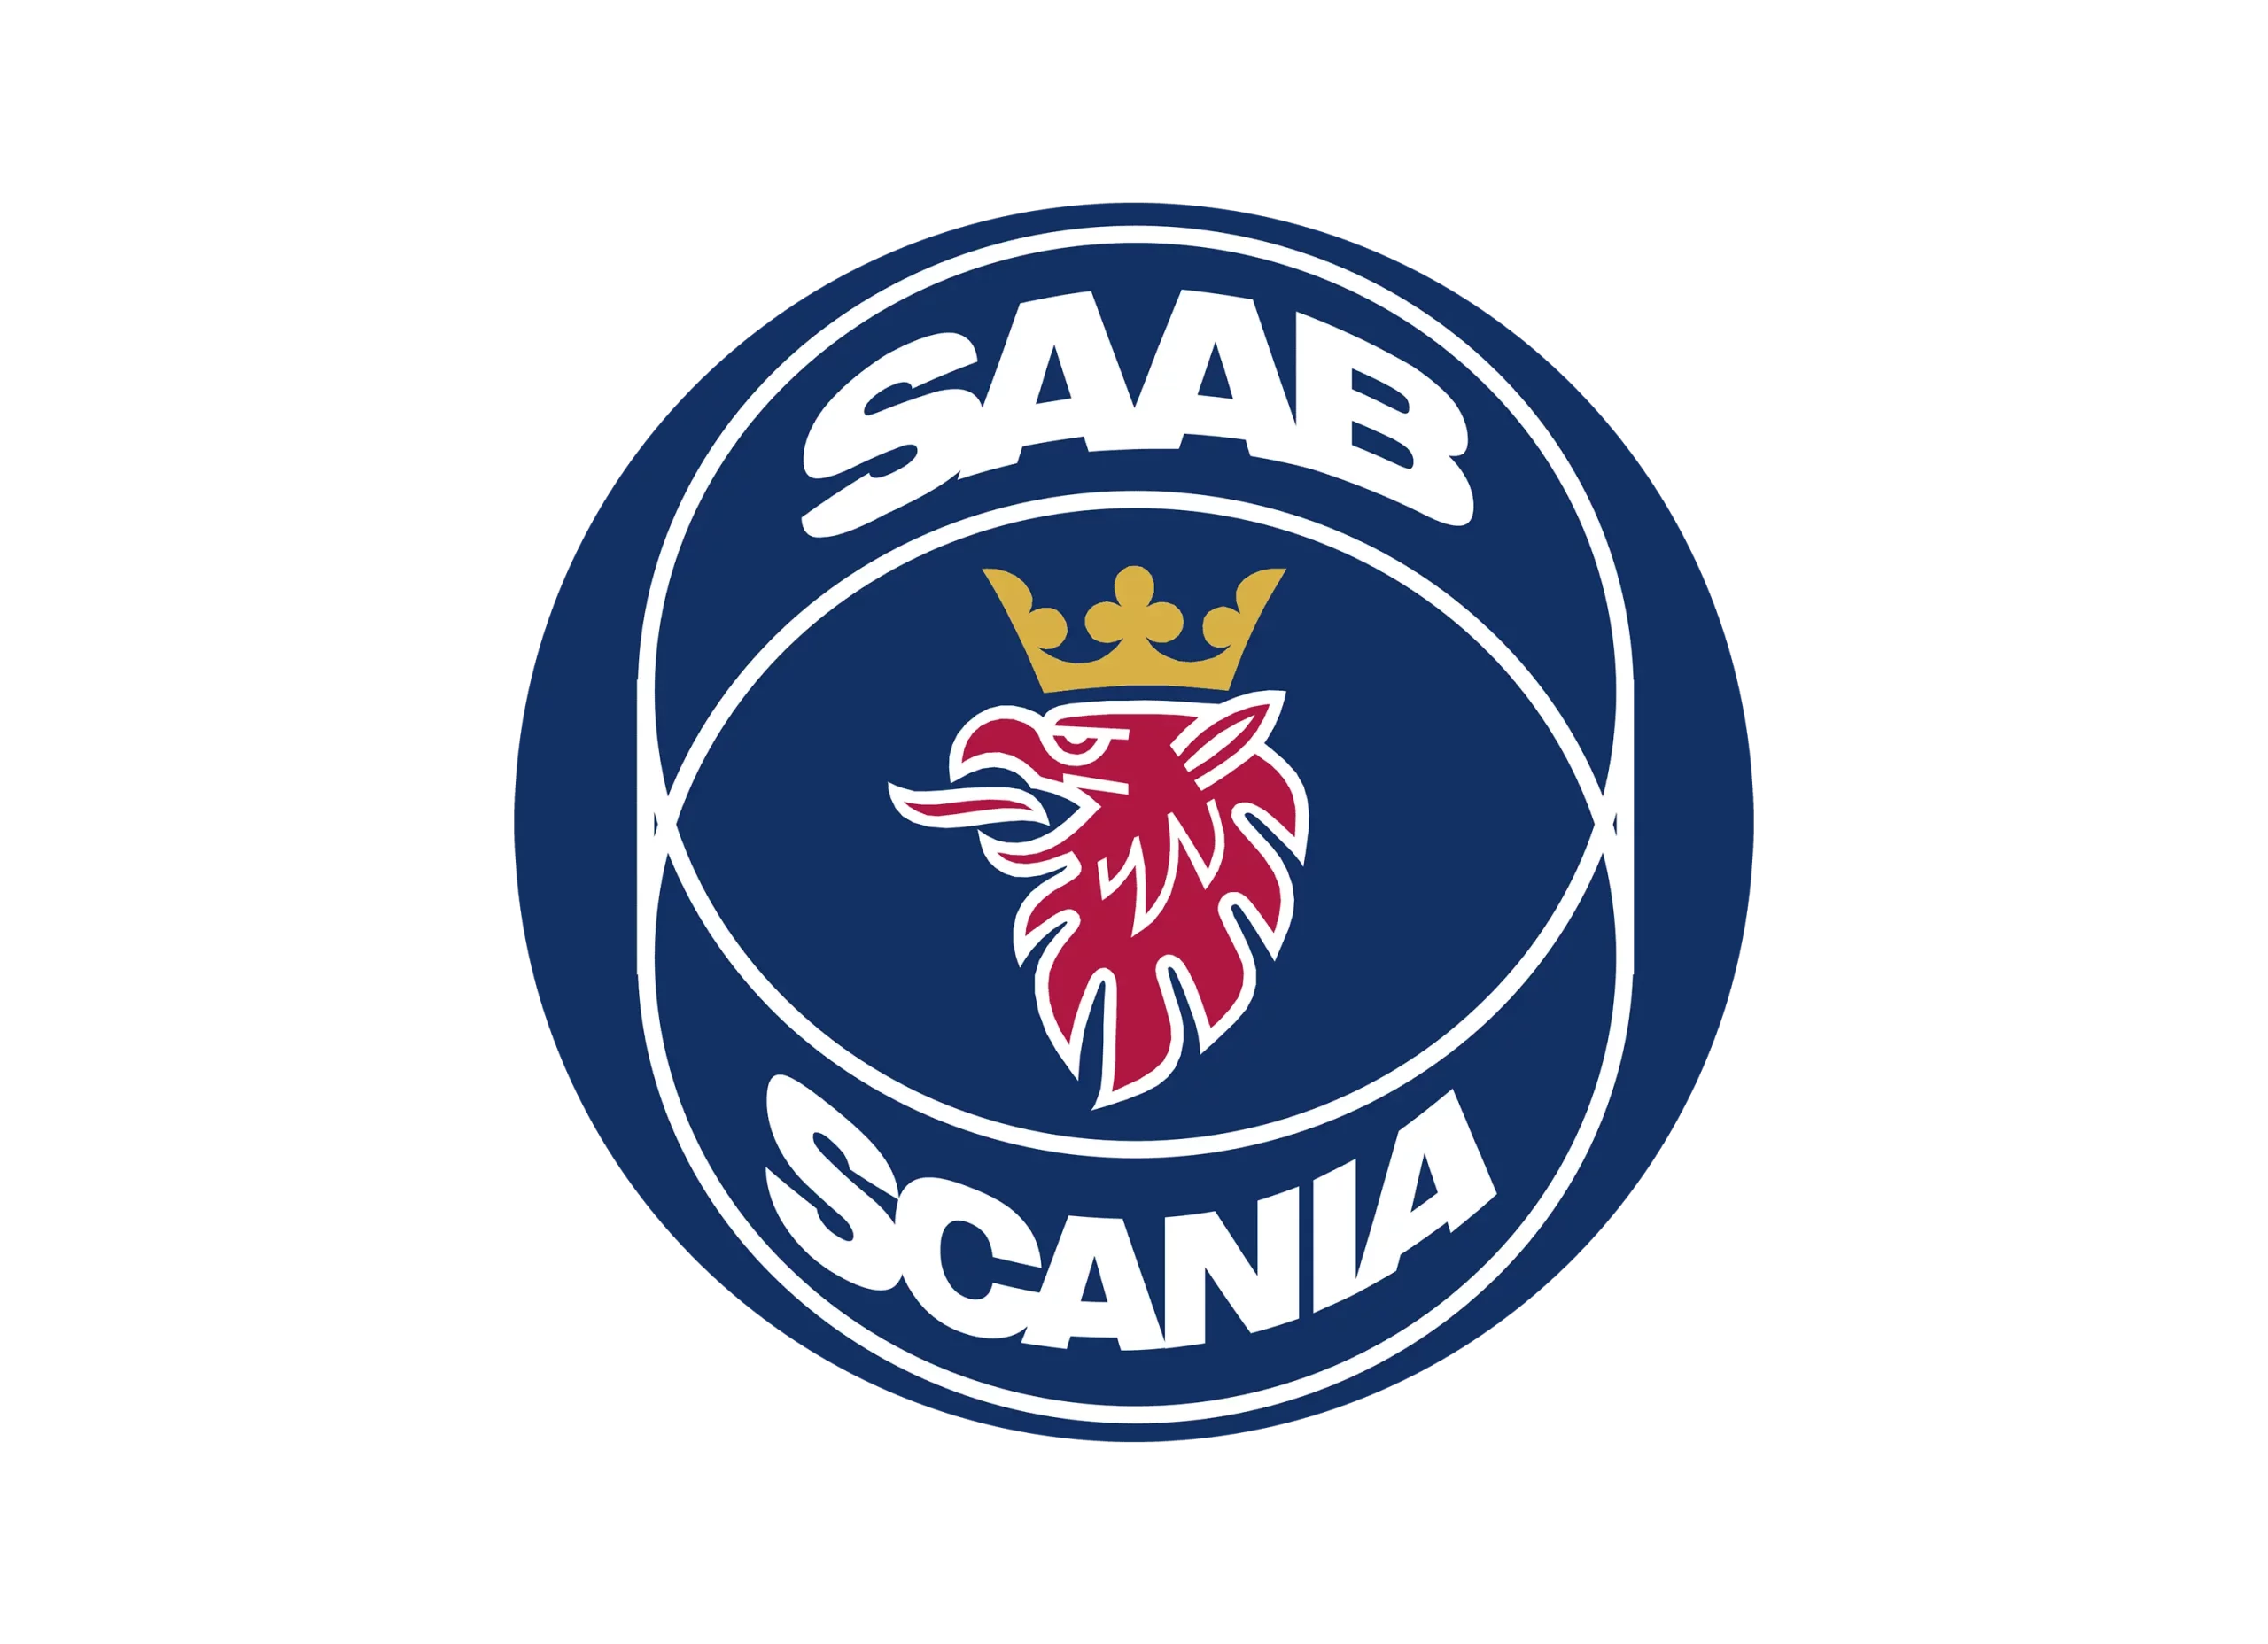 Scania logo 1984-1995